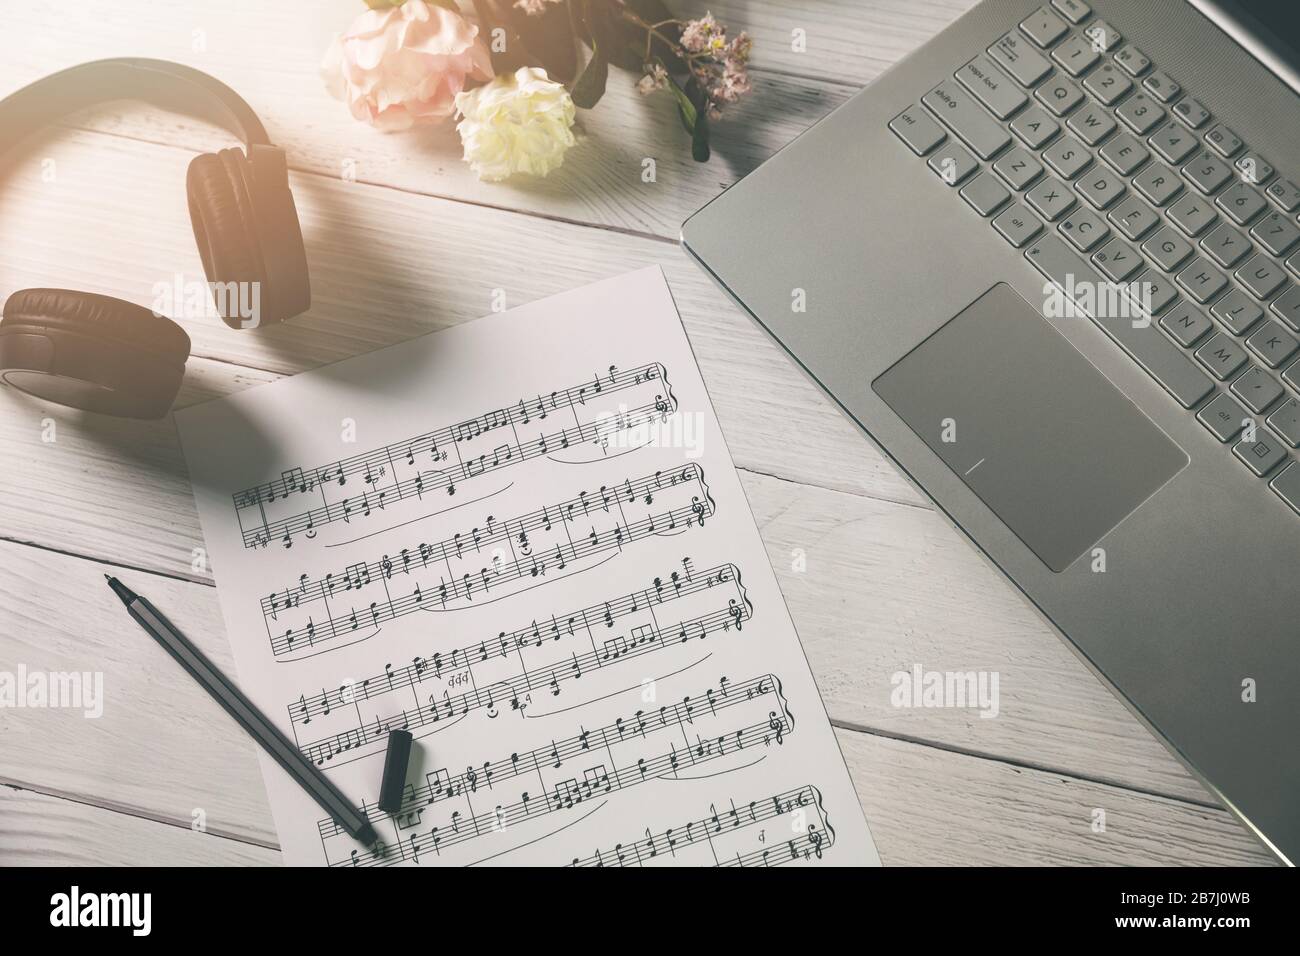 composer de la musique et de l'éducation - feuille de papier avec des notes musicales, un ordinateur portable et un casque sur le bureau de l'artiste Banque D'Images